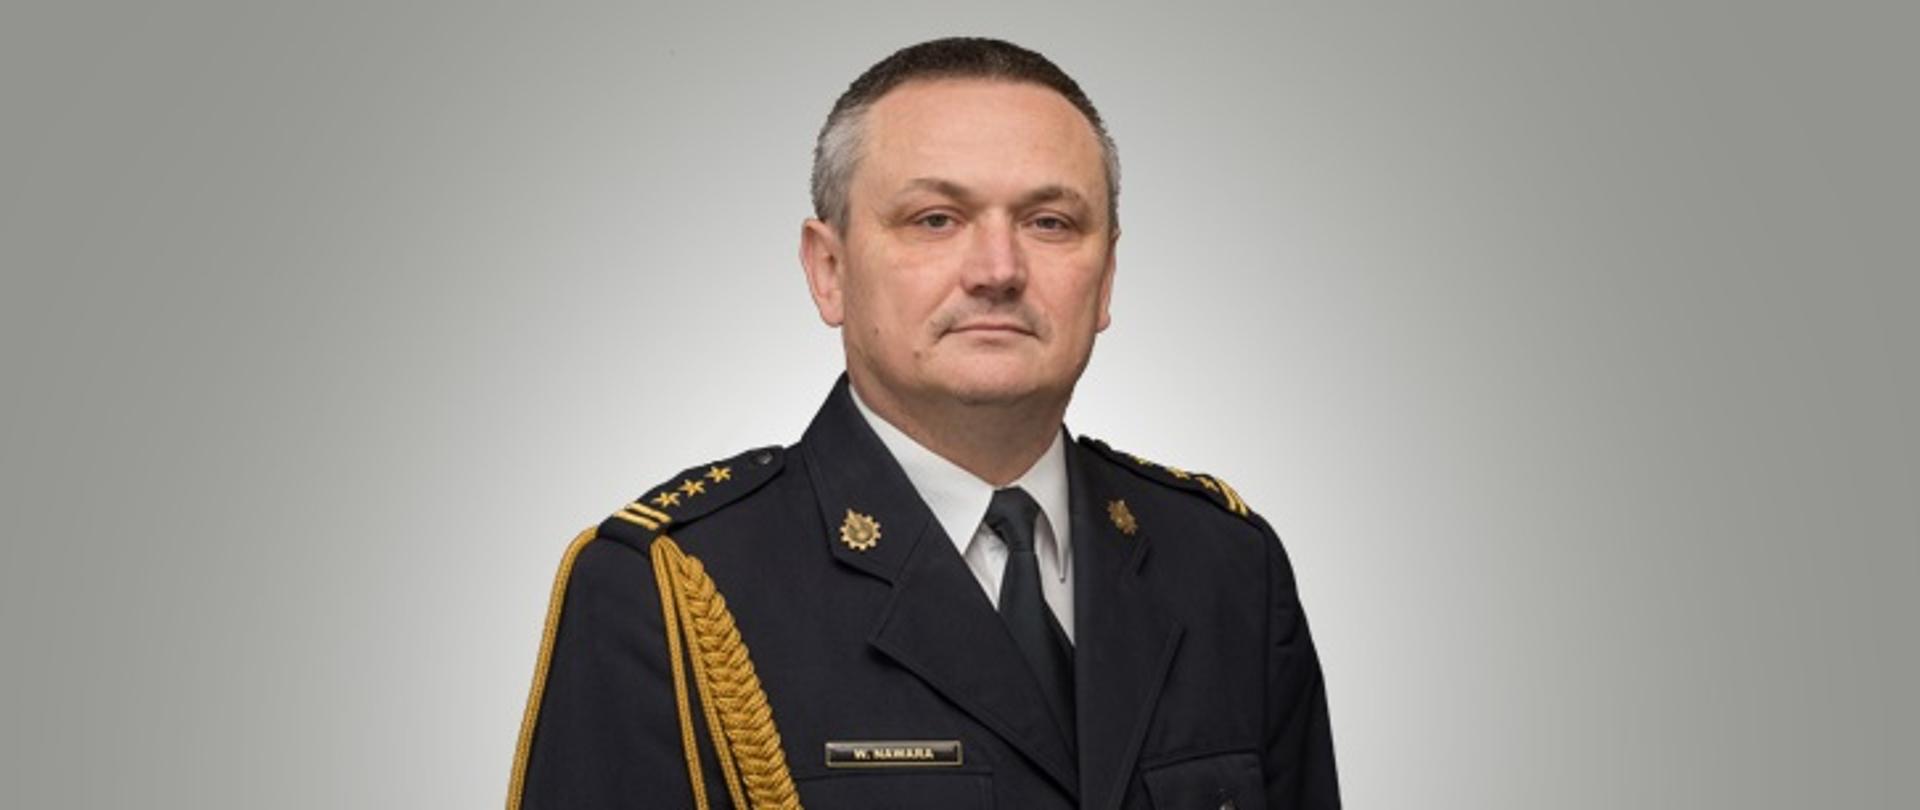 Zastępca Opolskiego Komendanta Wojewódzkiego PSP st. bryg. Wojciech Nawara w mundurze galowym.